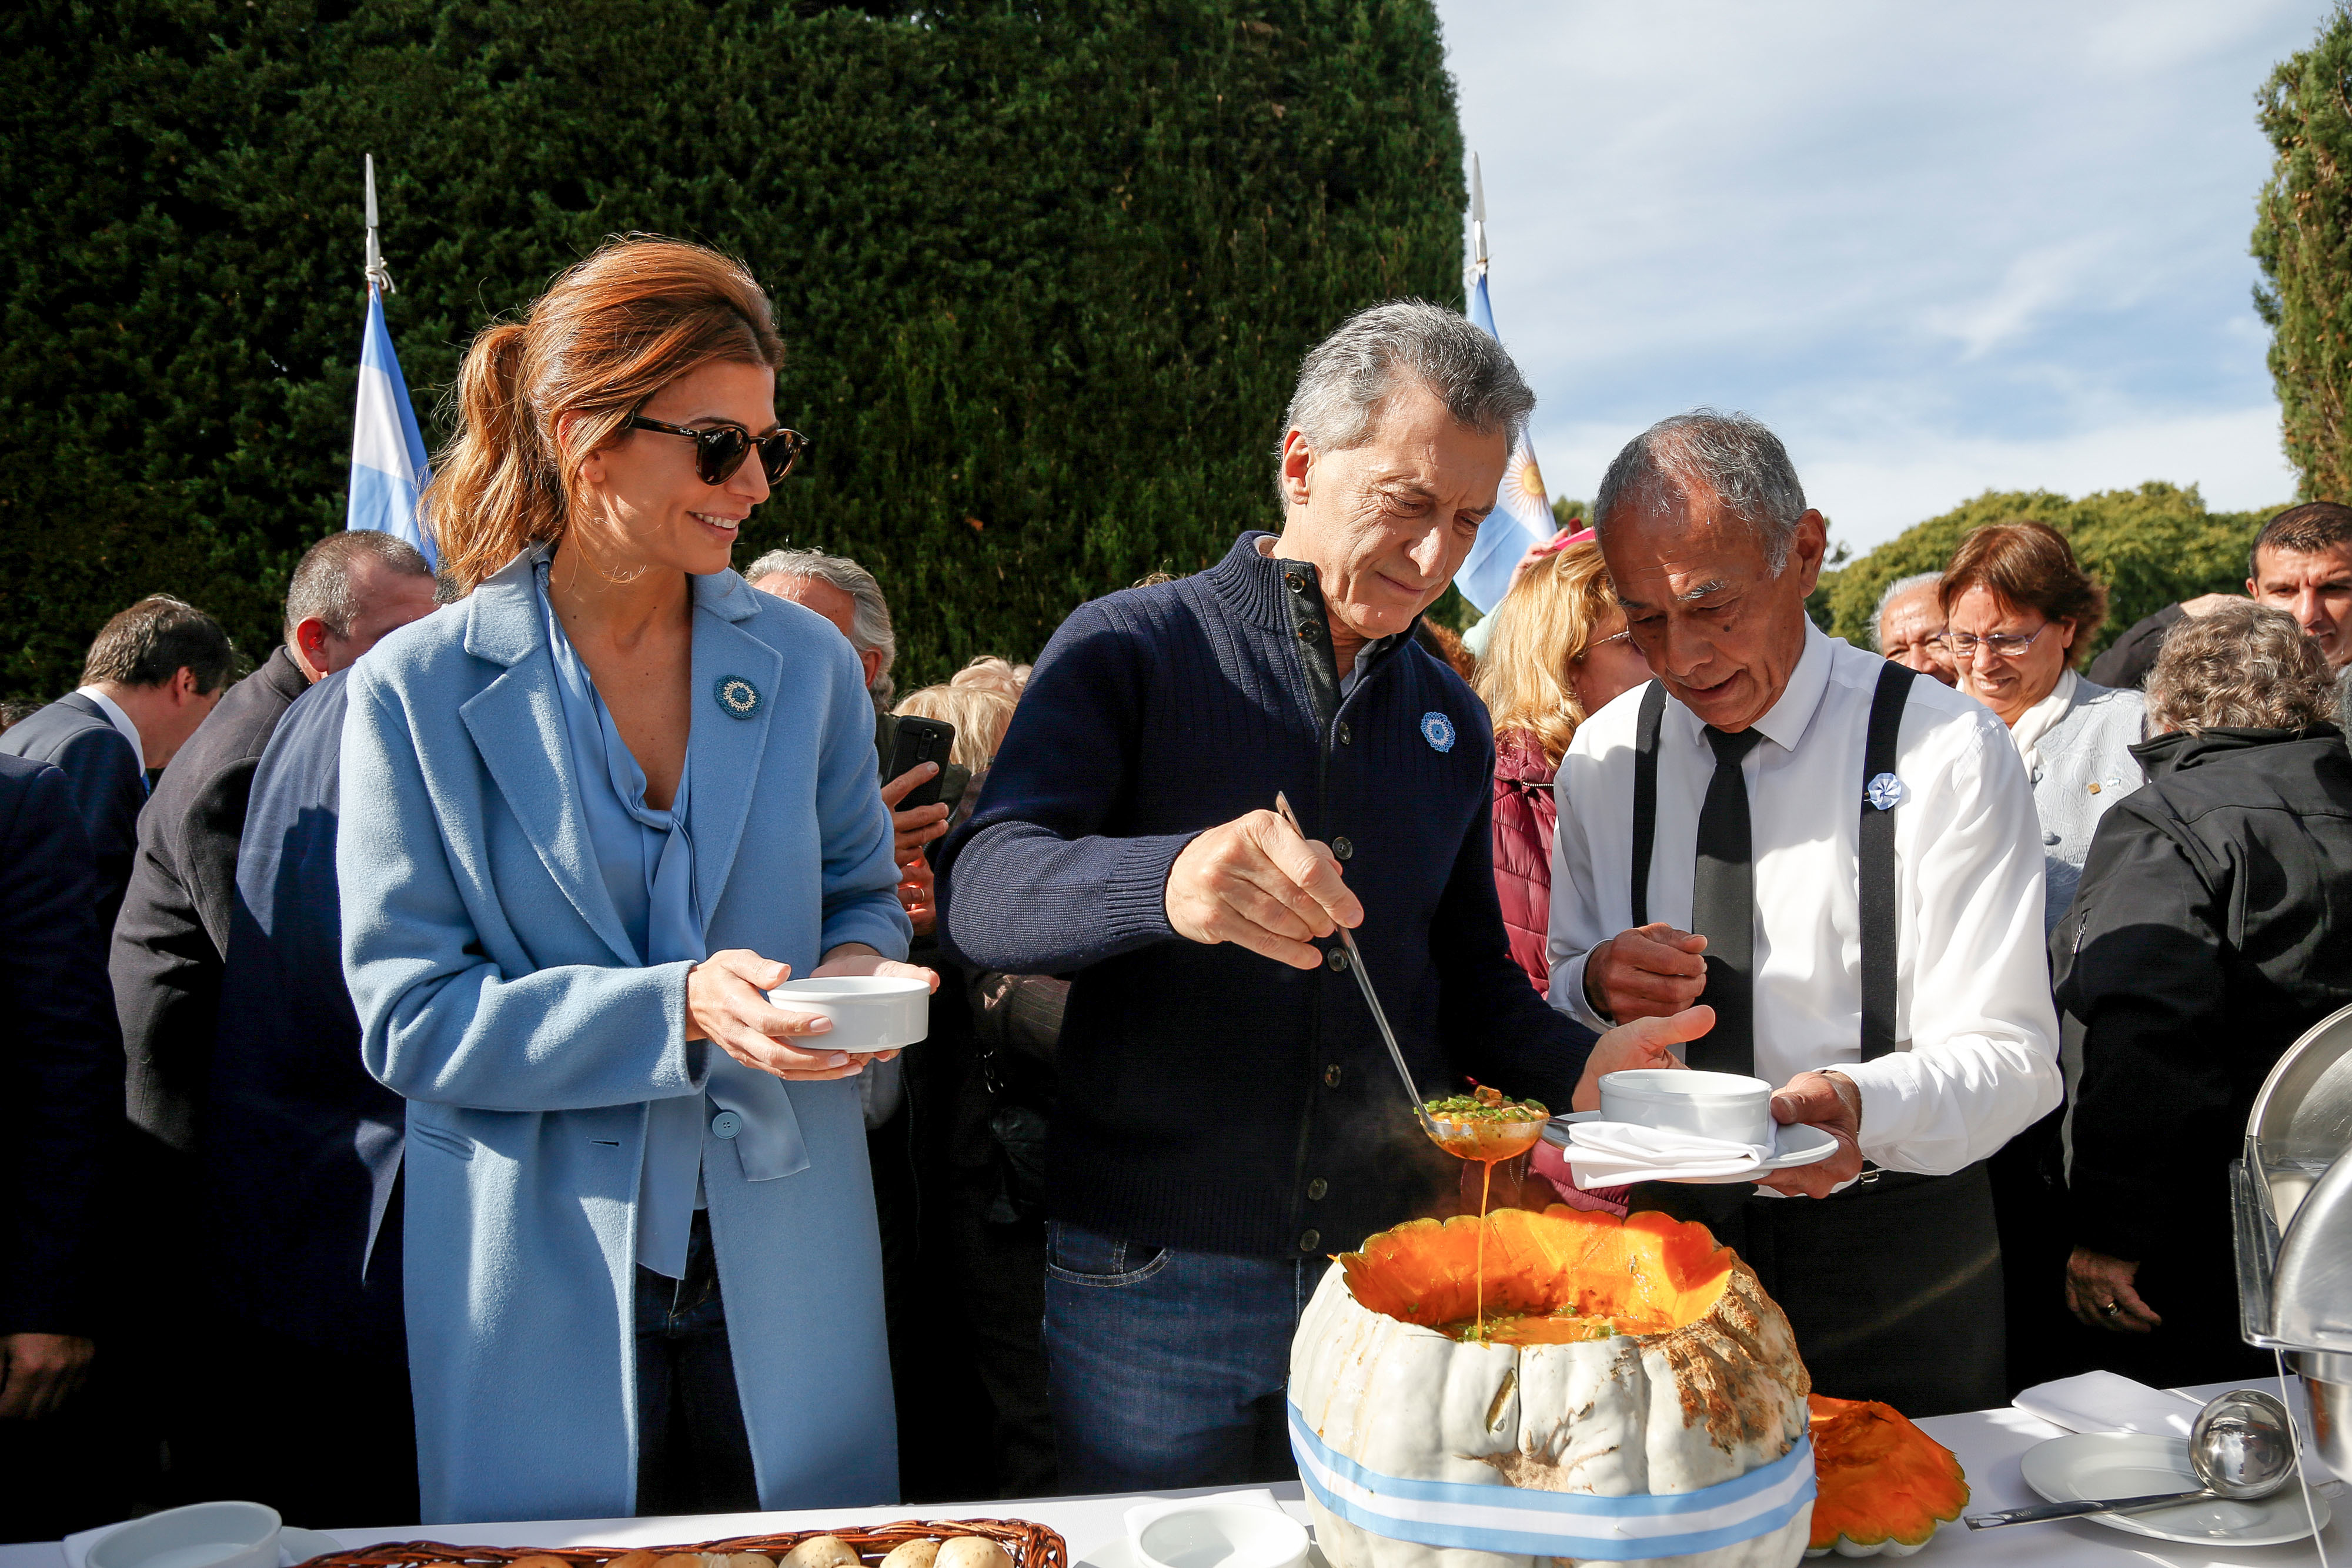 El Presidente de la Nacion, Mauricio Macri, junto a la primera dama, Juliana Awada en el dia de la Patria en la quinta de olivos. Foto: Agencia Télam